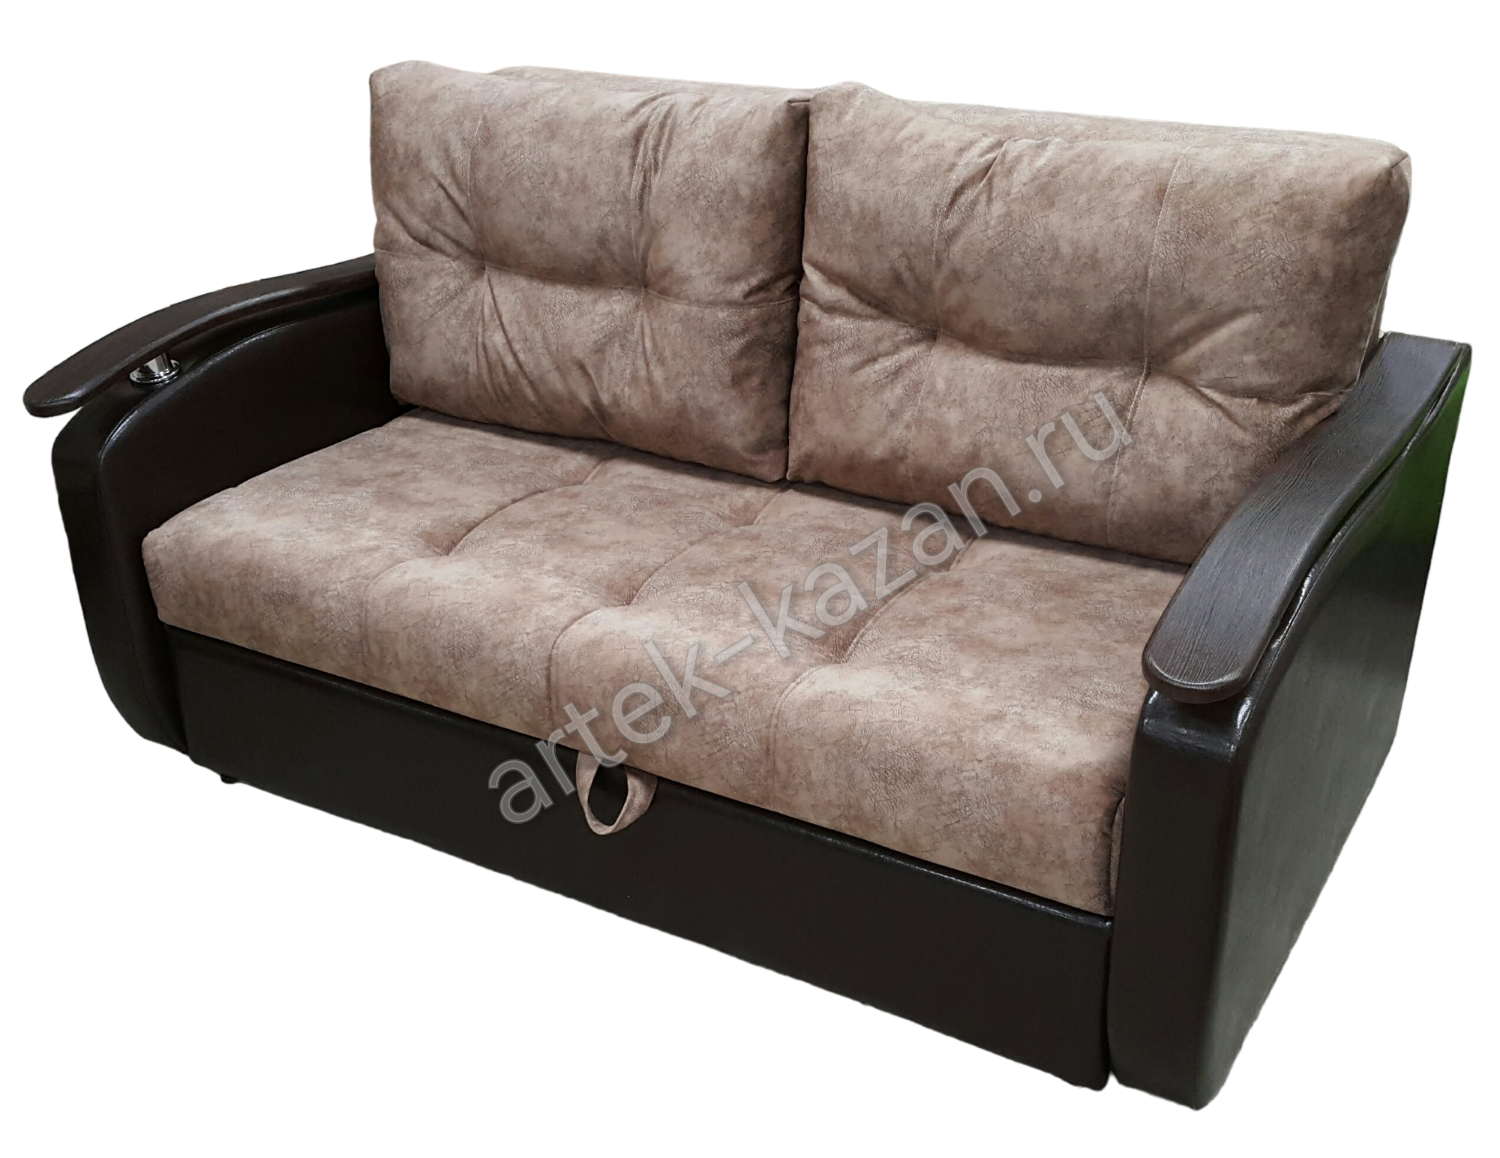 Мини диван на выкатном механизме Миник фото № 23. Купить недорогой диван по низкой цене от производителя можно у нас.